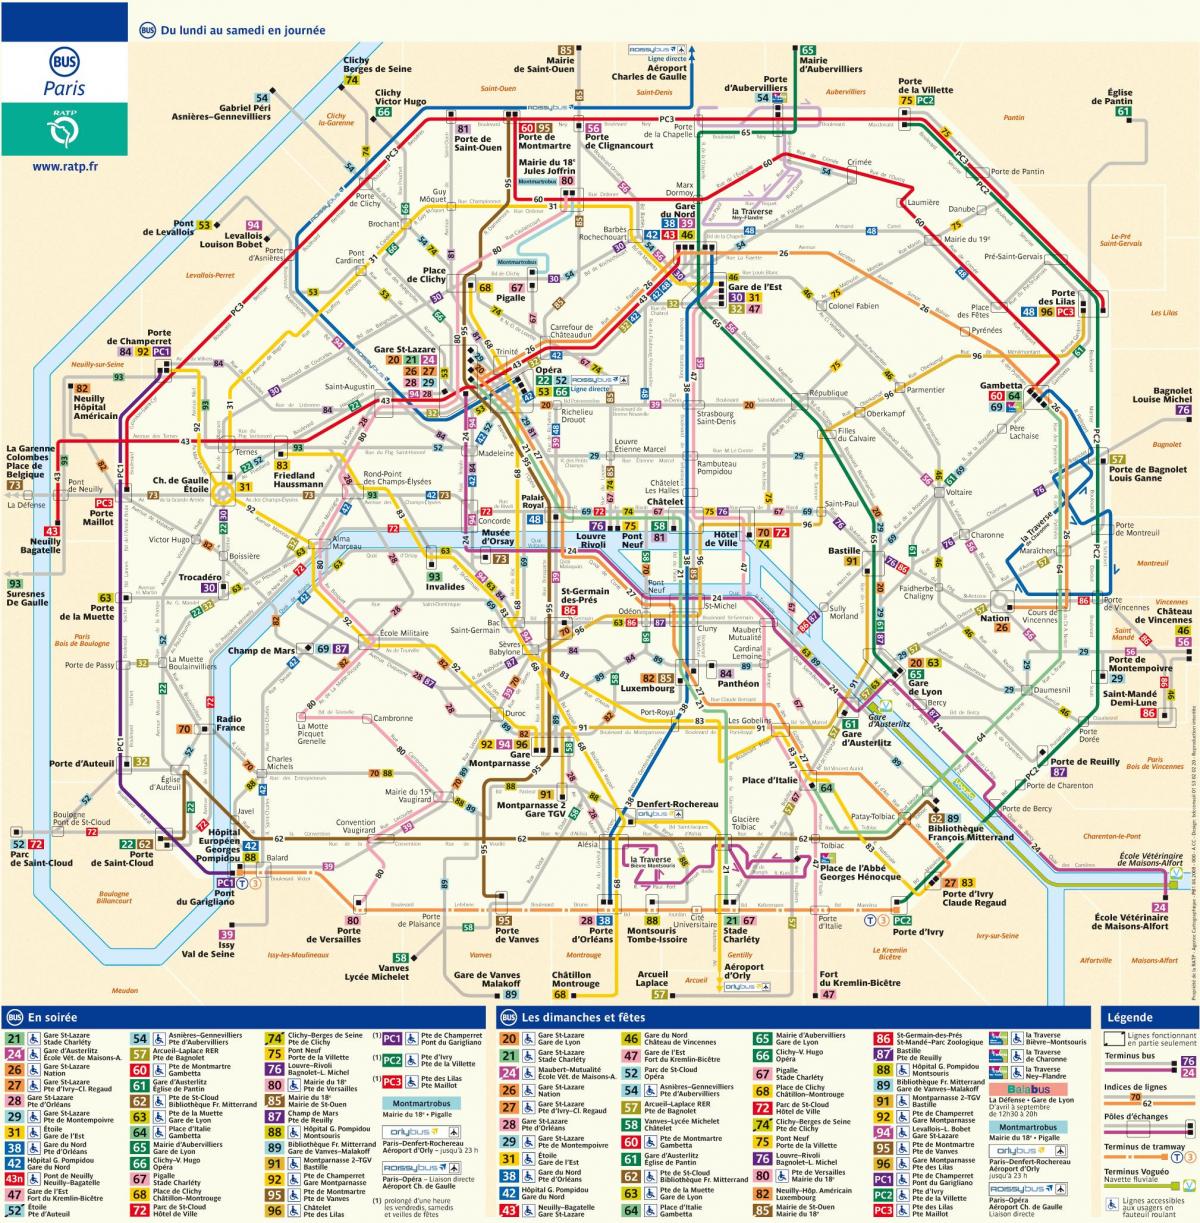 Mapa de RATP autobús